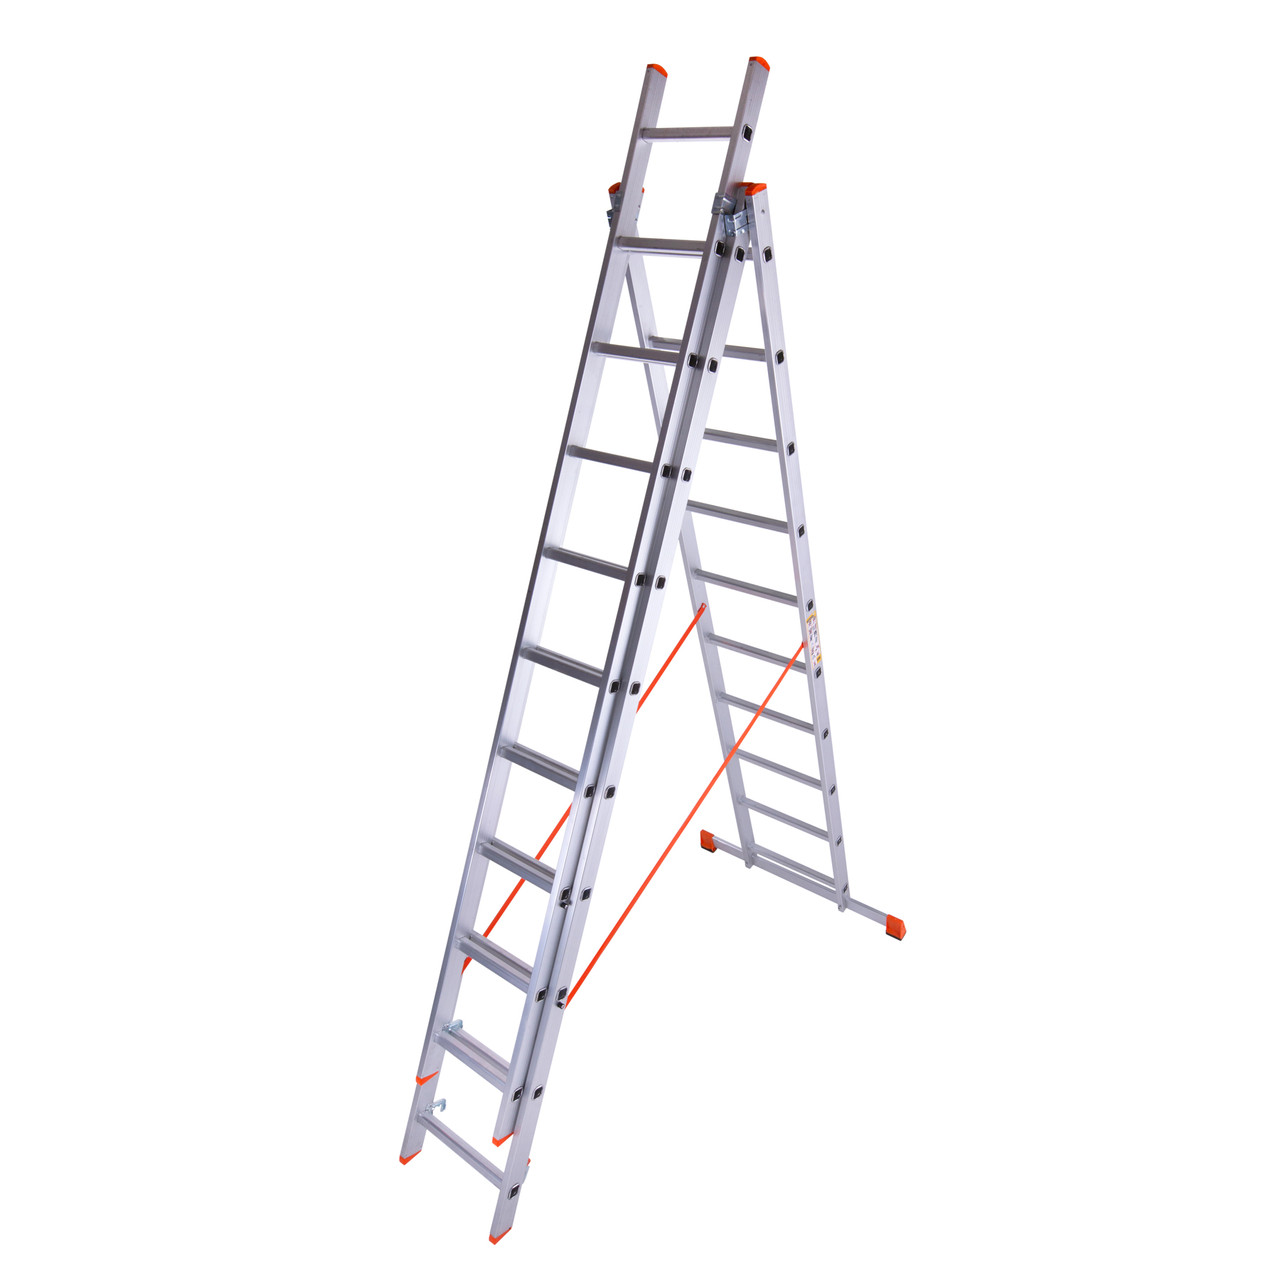 

Лестница трехсекционная алюминиевая Laddermaster Sirius A3A12. 3x12 ступенек